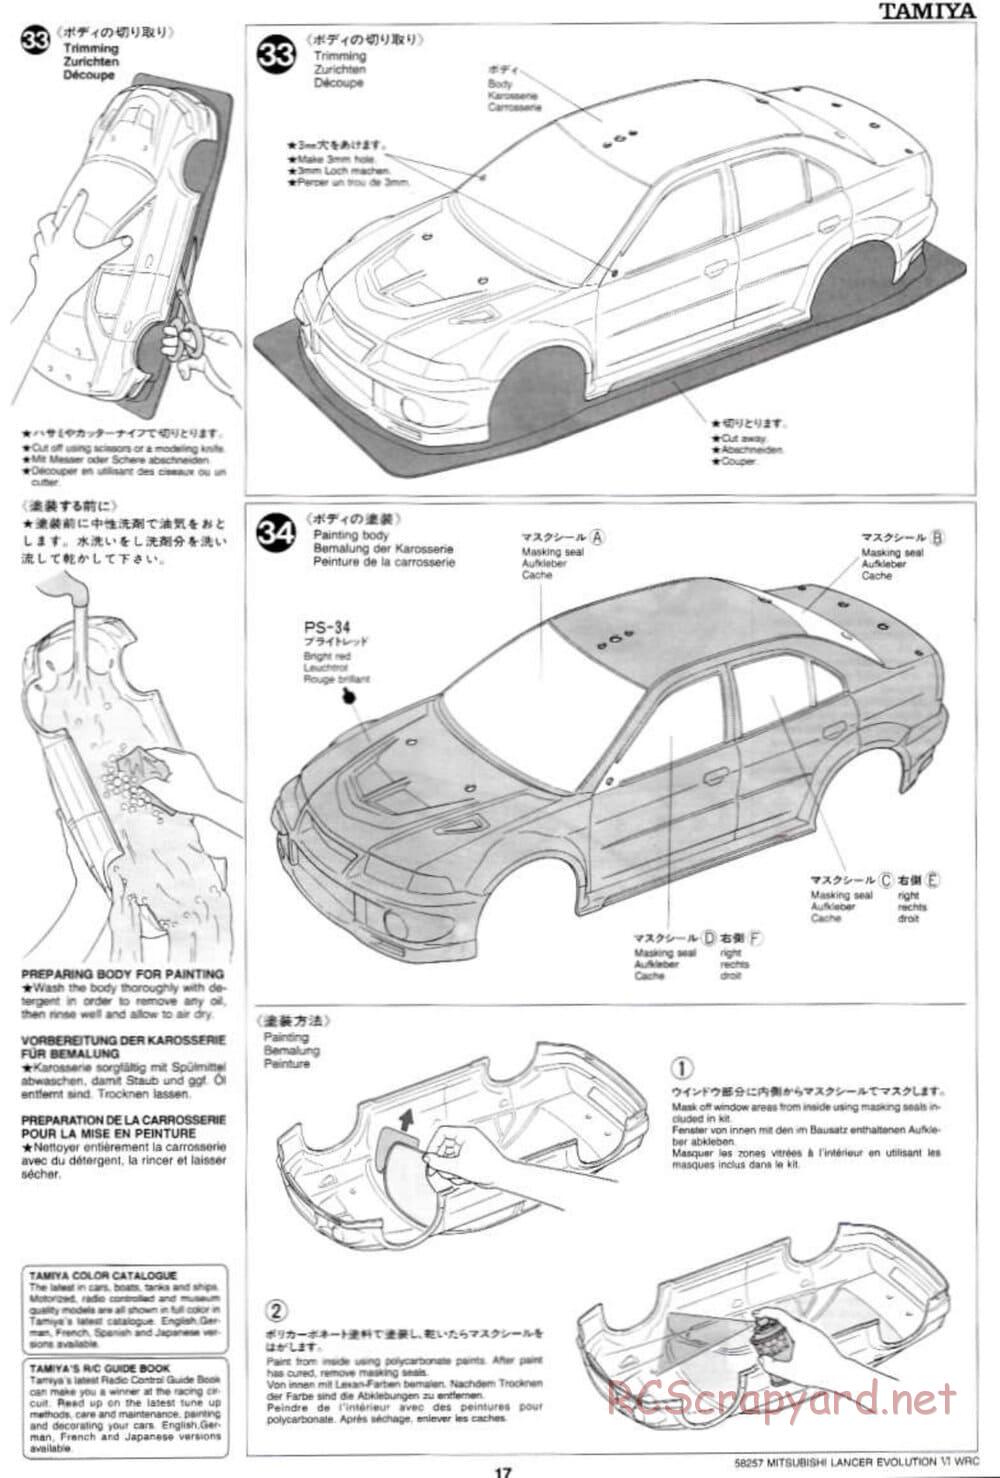 Tamiya - Mitsubishi Lancer Evolution VI WRC - TB-01 Chassis - Manual - Page 17